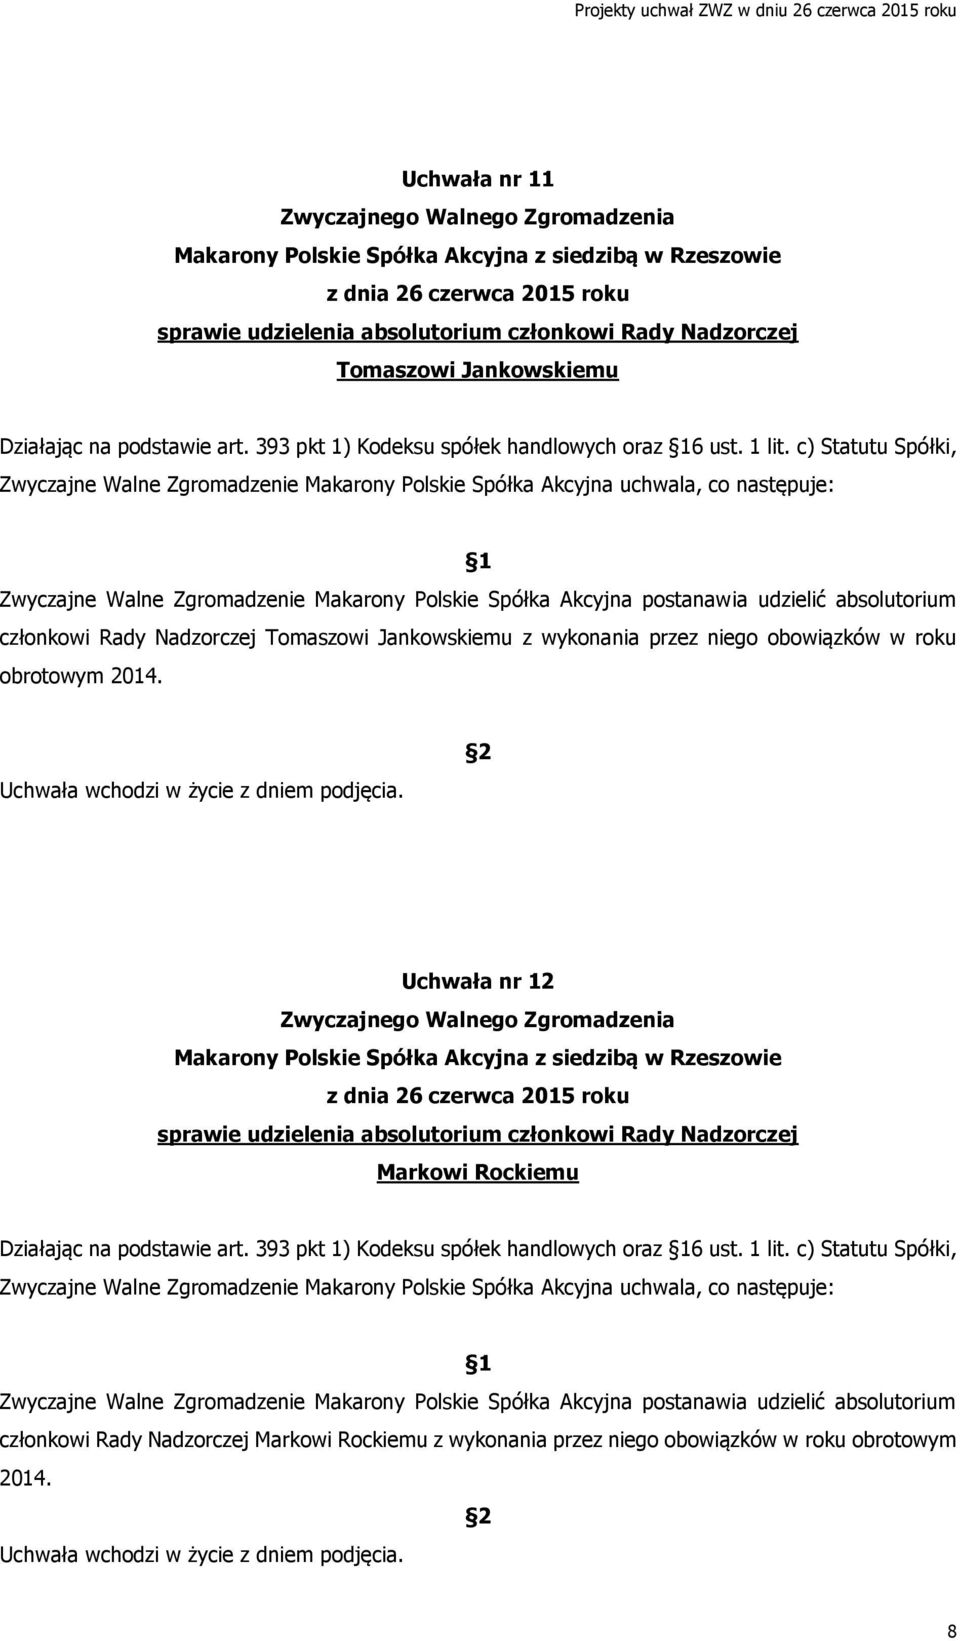 c) Statutu Spółki, członkowi Rady Nadzorczej Tomaszowi Jankowskiemu z wykonania przez niego obowiązków w roku obrotowym 2014.